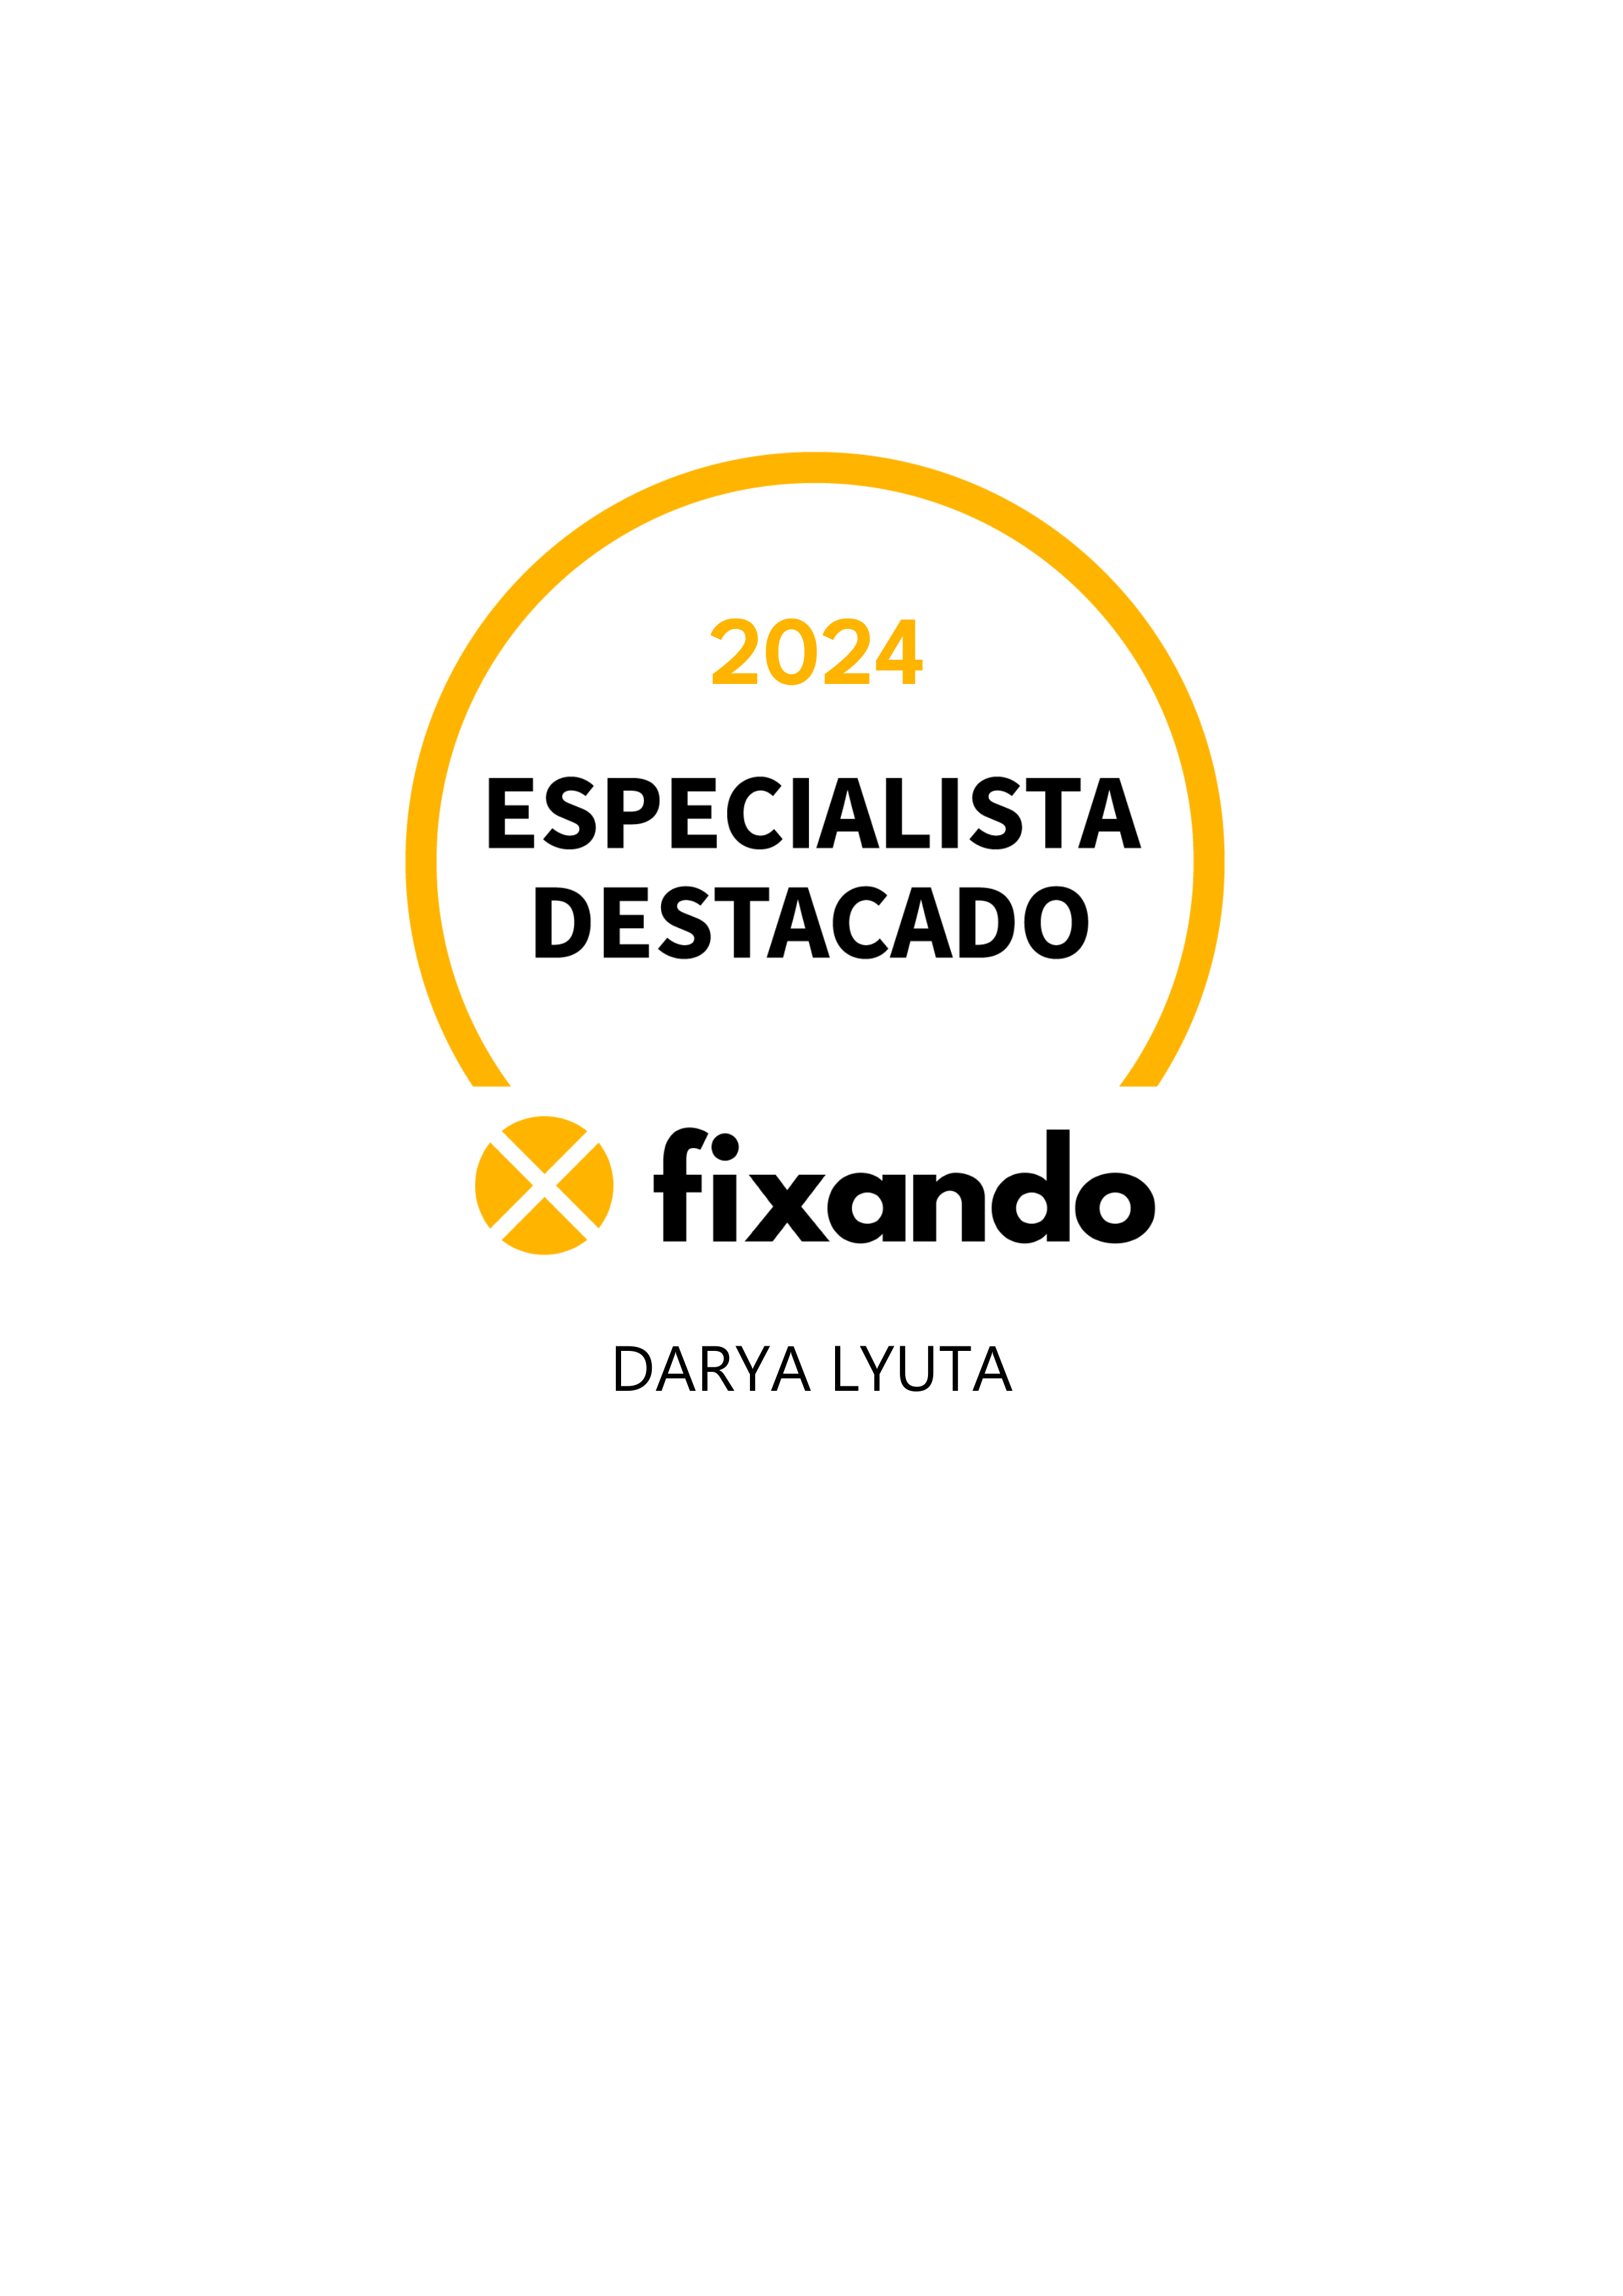 Darya Lyuta - Santa Maria da Feira - Consultoria de Marketing e Digital